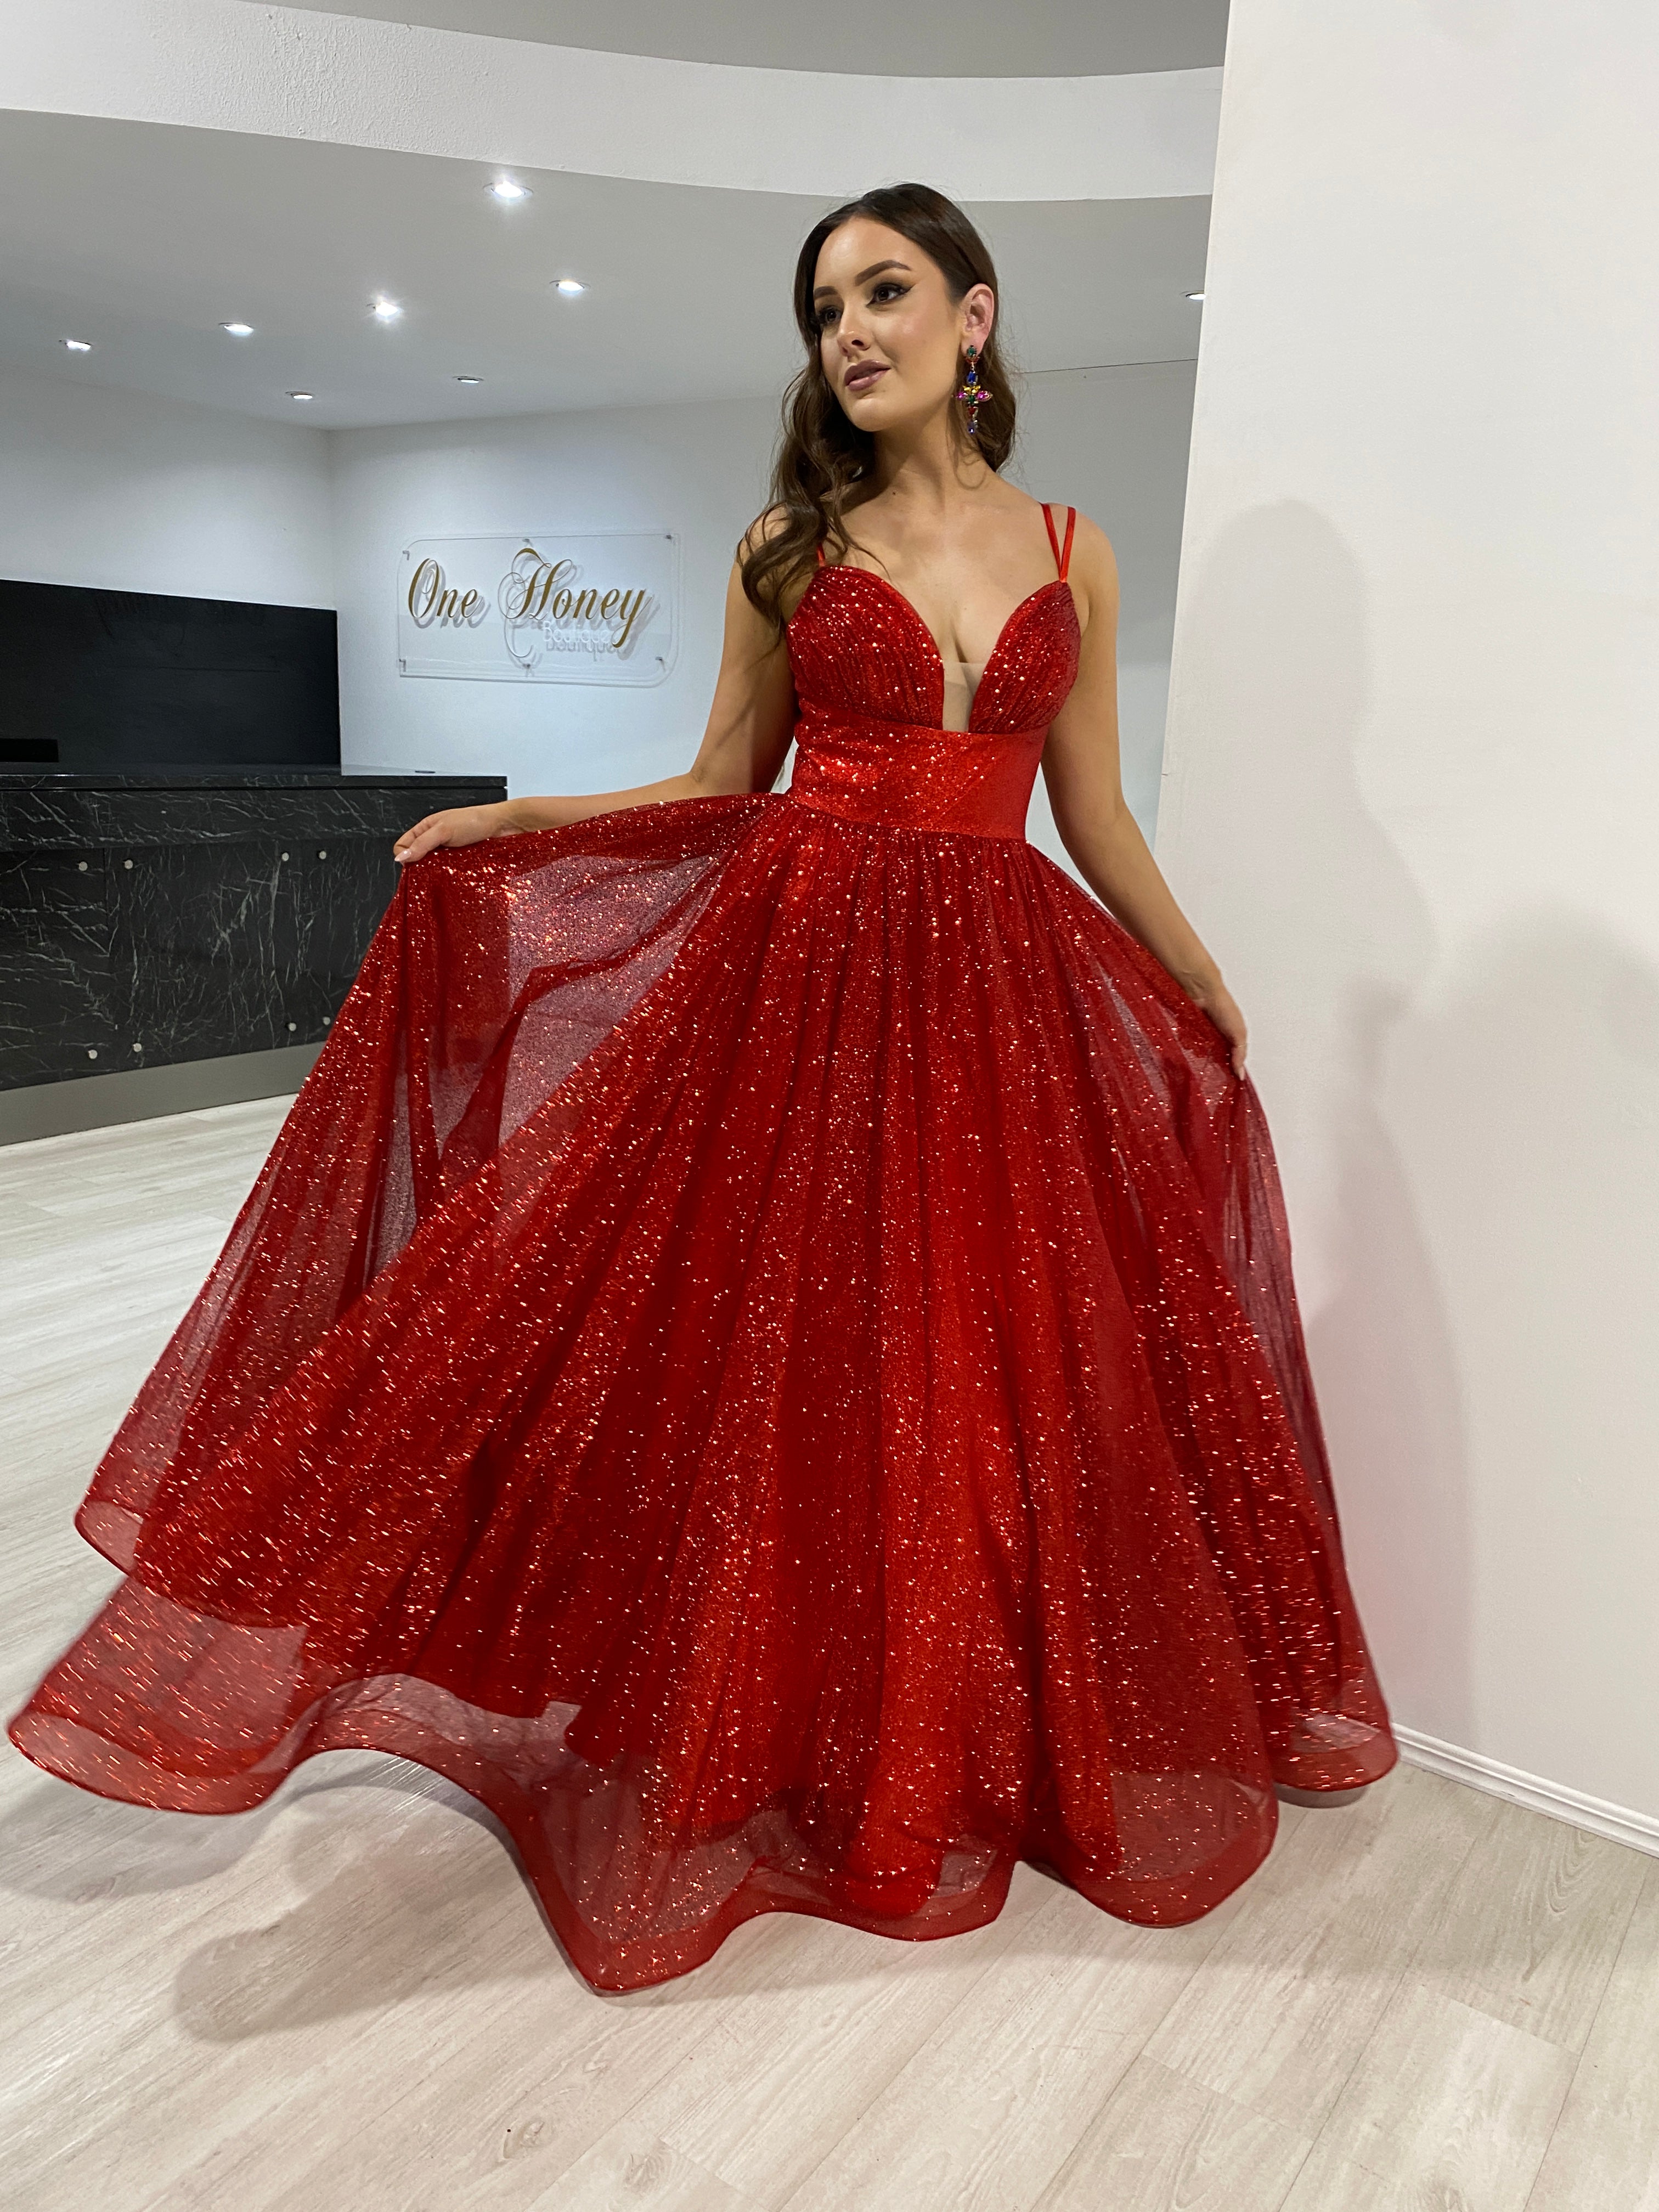 Parisian - Evening Gown Collection 2019 by La Belle Couture Weddings Pte  Ltd | Bridestory.com